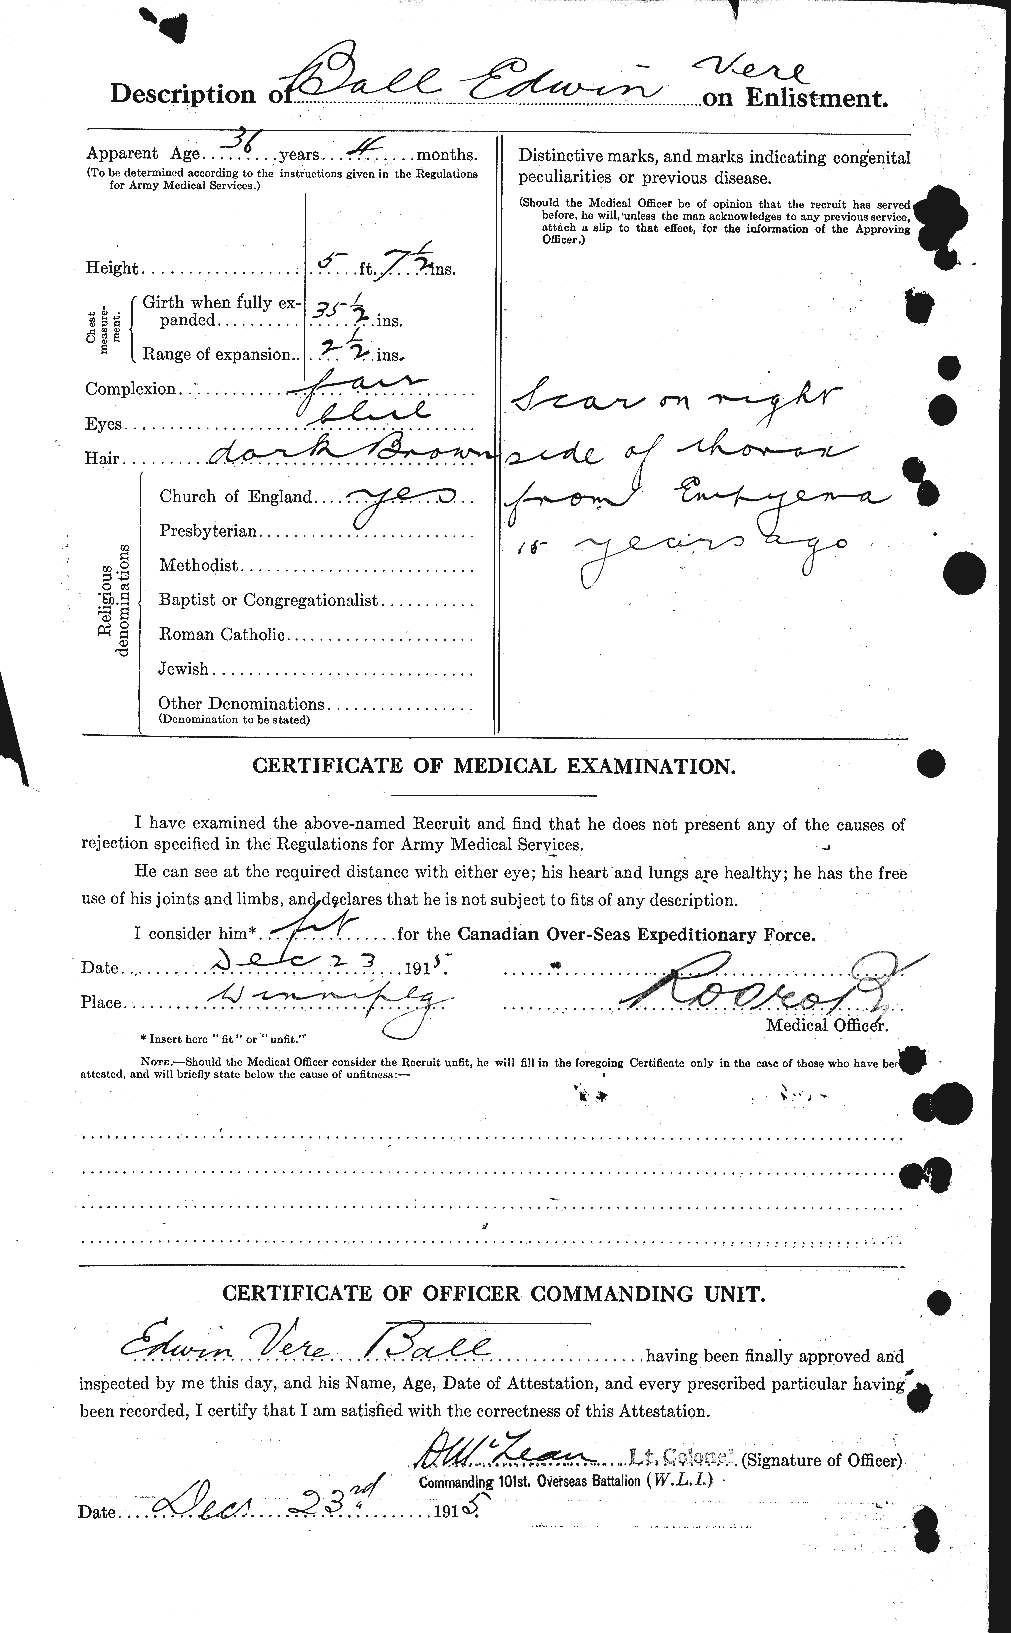 Dossiers du Personnel de la Première Guerre mondiale - CEC 225823b